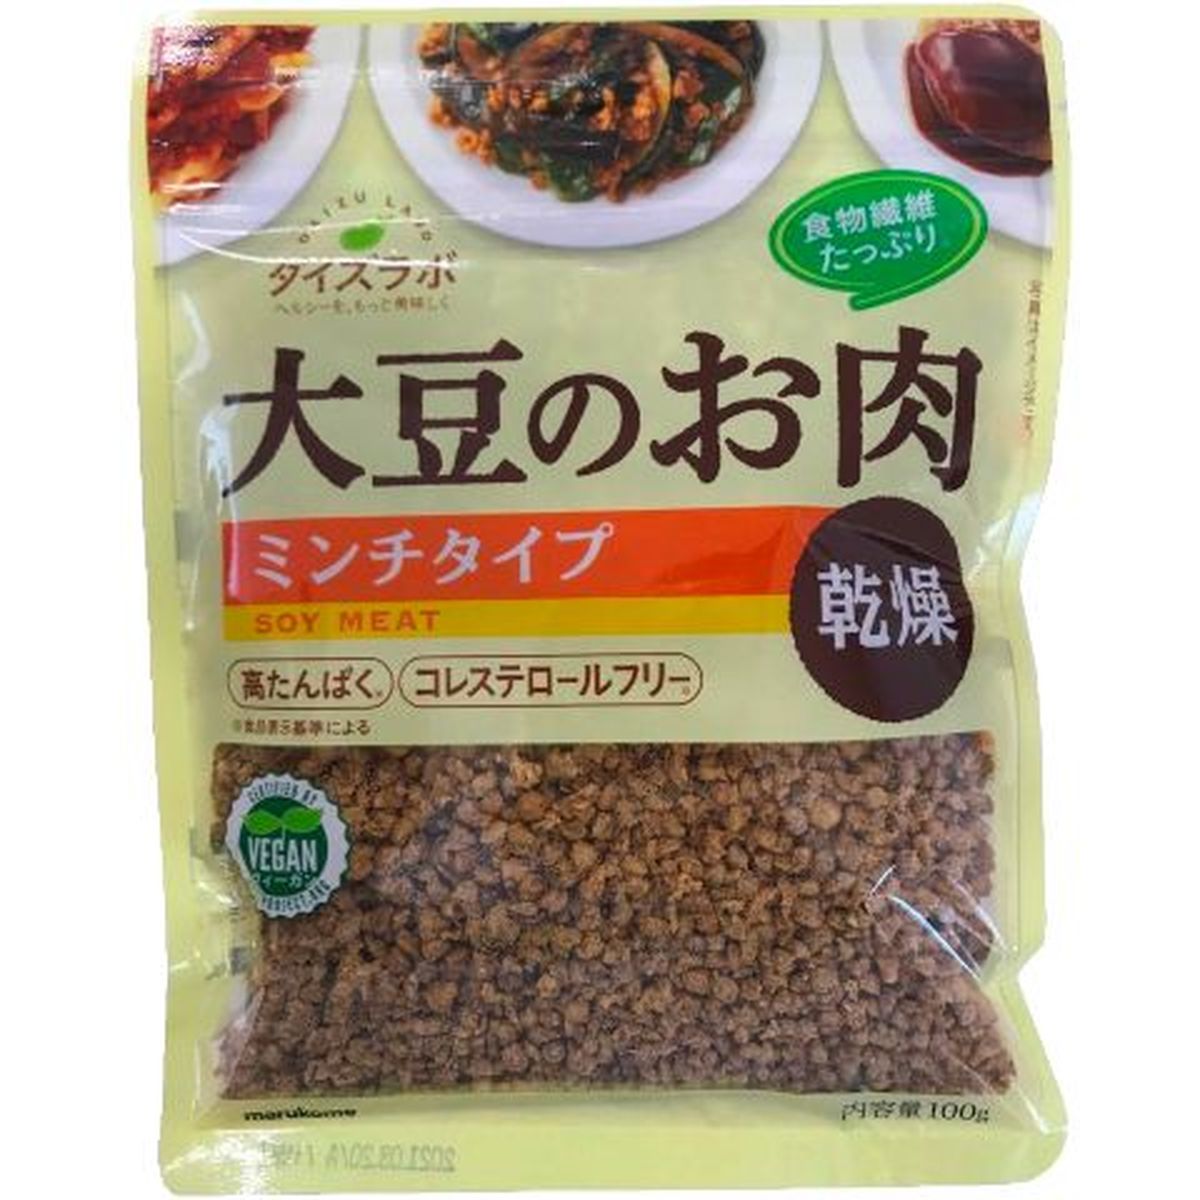 【10個入リ】マルコメ ダイズラボ 大豆肉乾燥 ミンチ 100g